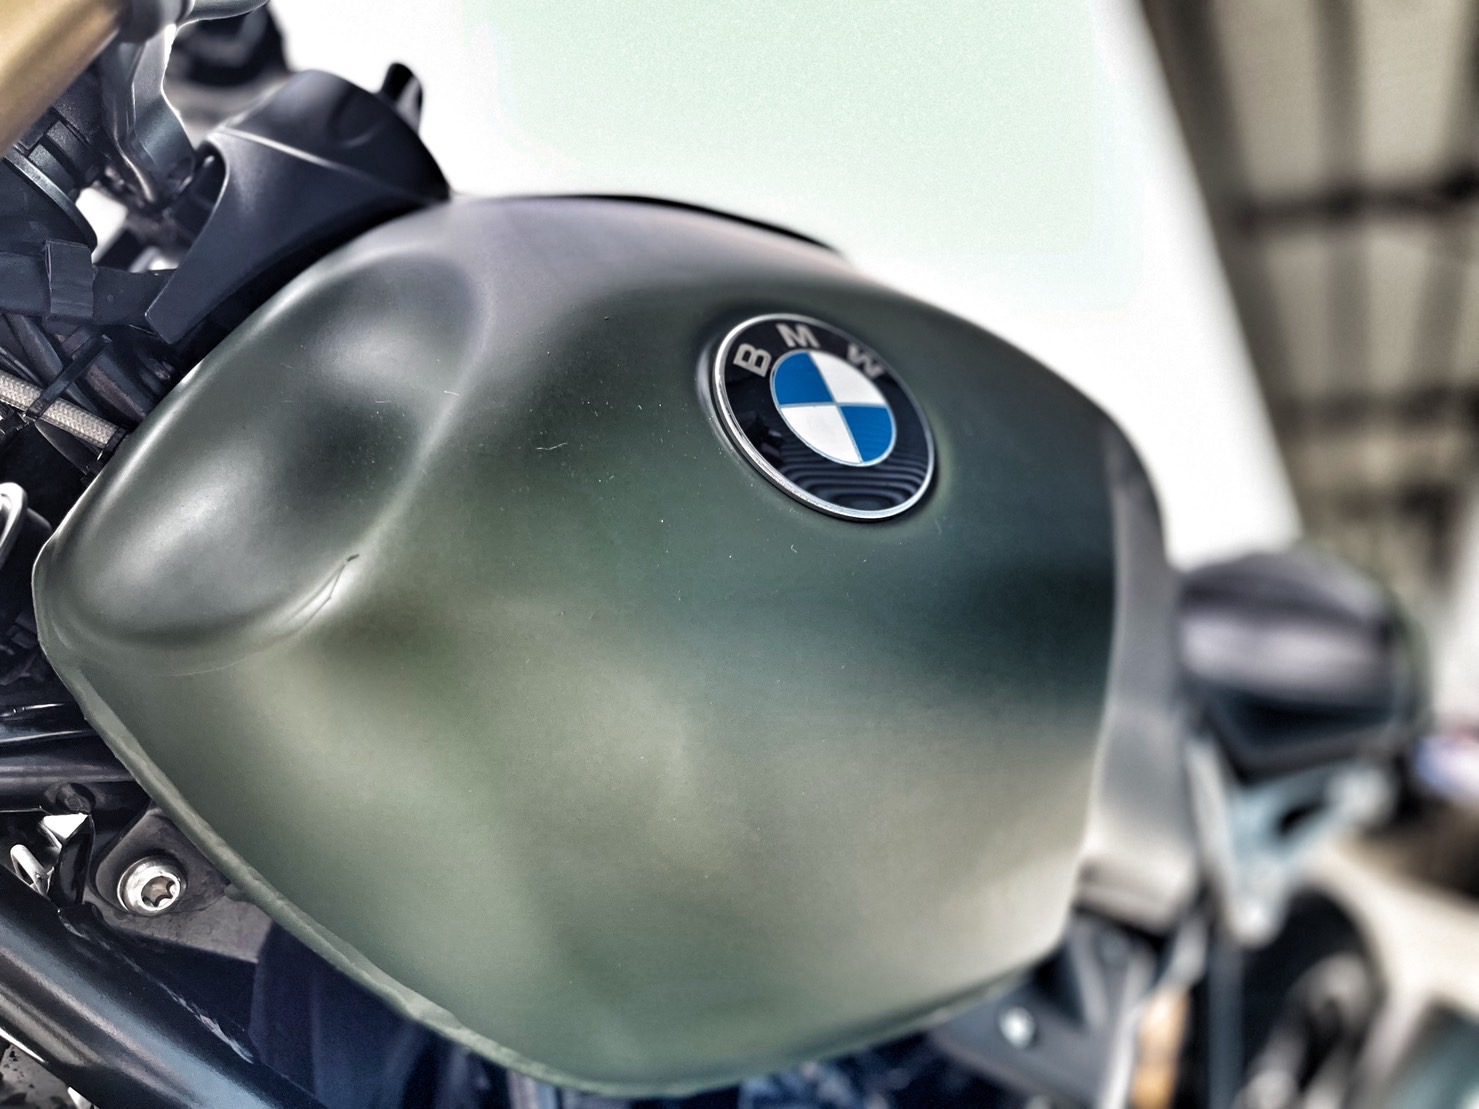 BMW R nineT - 中古/二手車出售中 視覺改裝 無摔車無事故 市場最低價 小資族二手重機買賣 | 小資族二手重機買賣